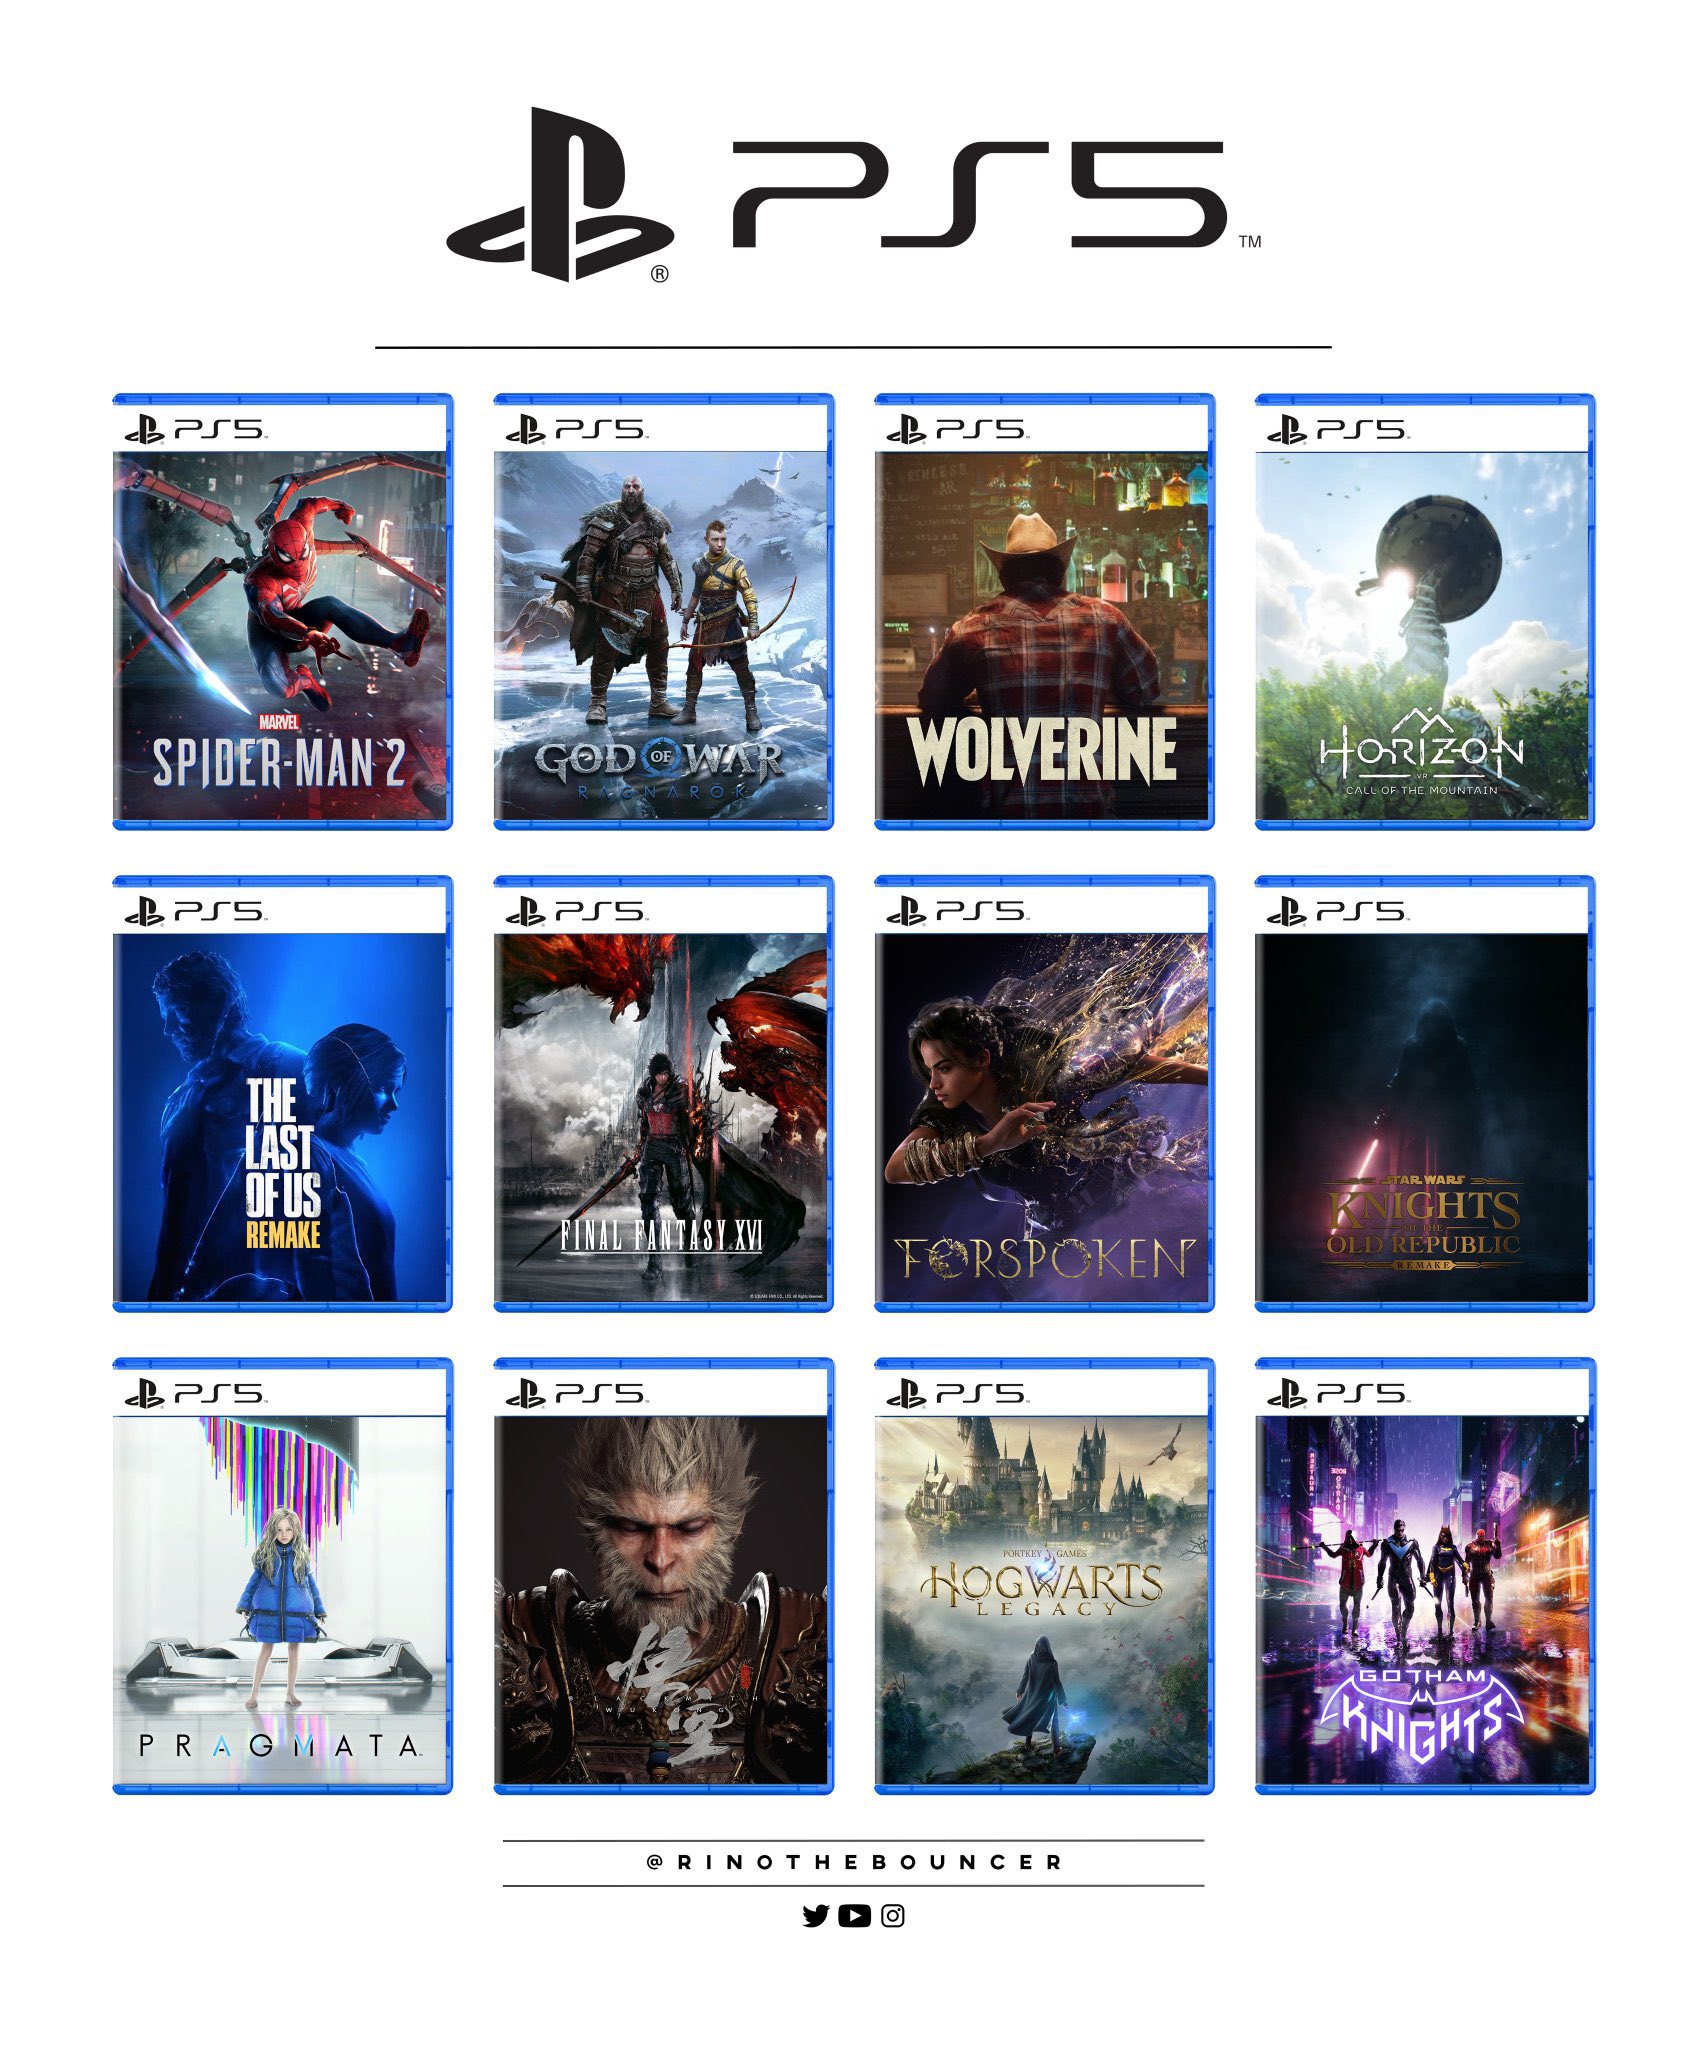 Best PS5 Exclusive Games